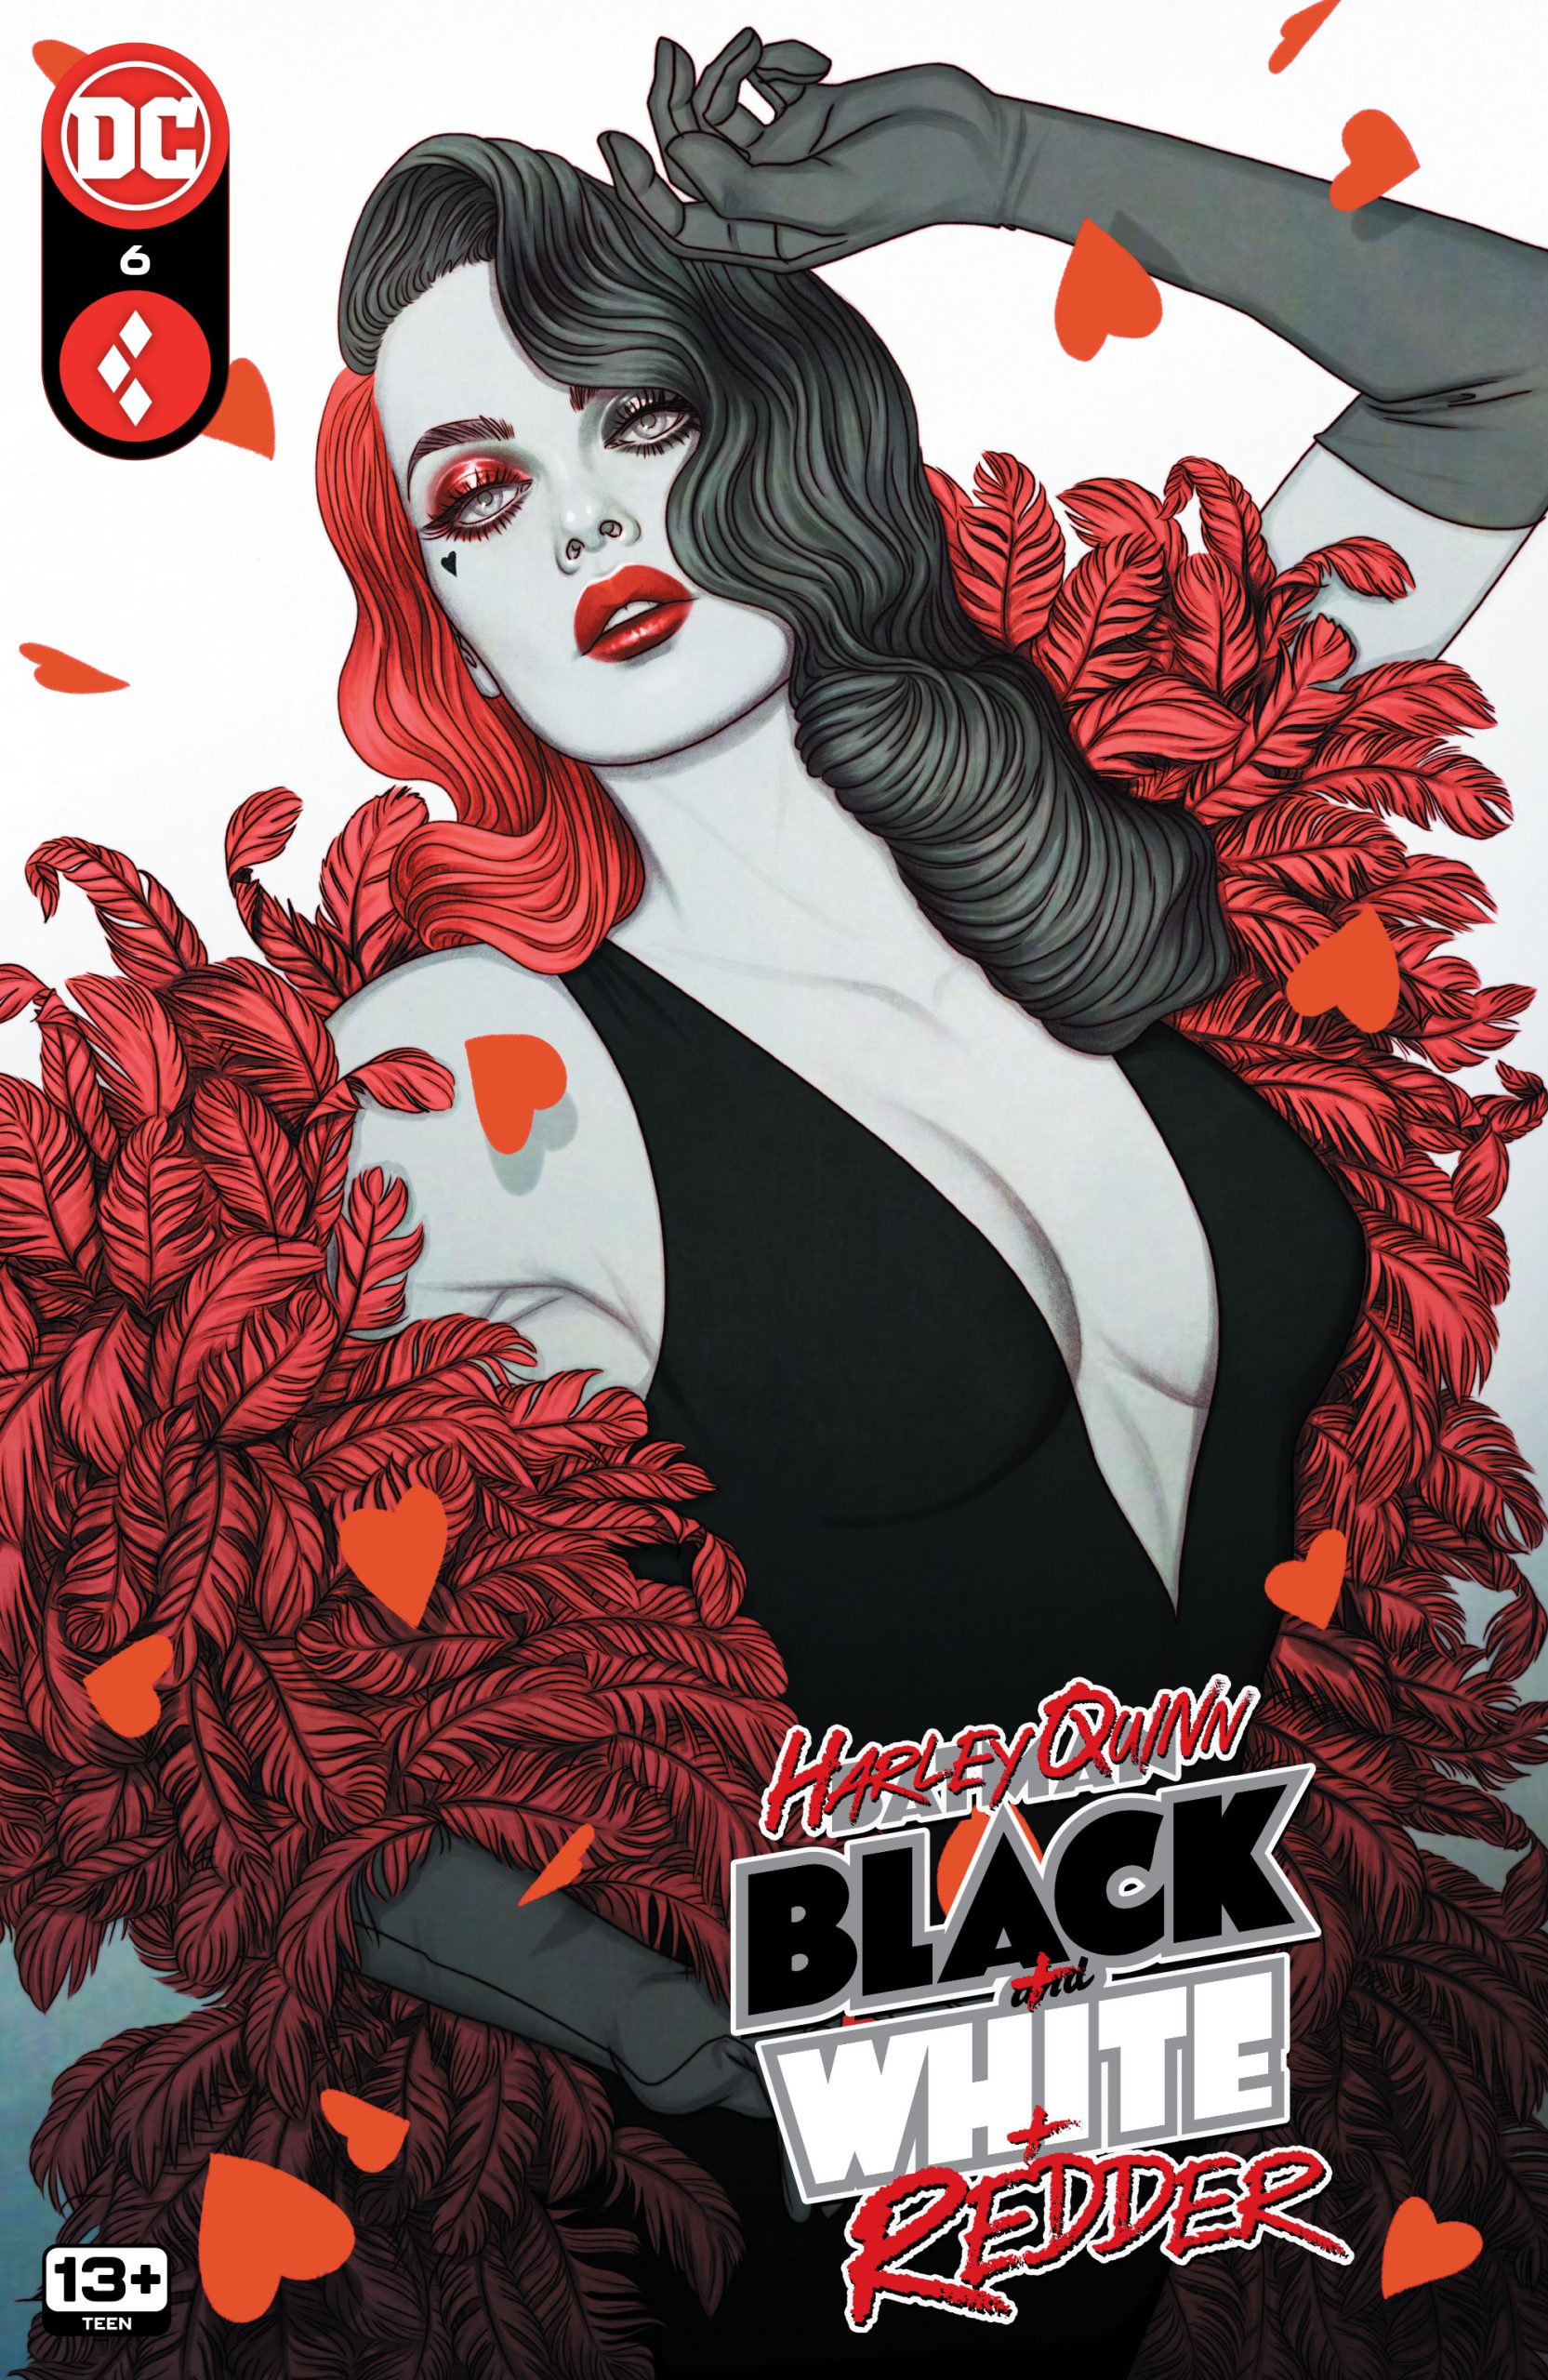 DC Preview: Harley Quinn: Black + White + Redder #6